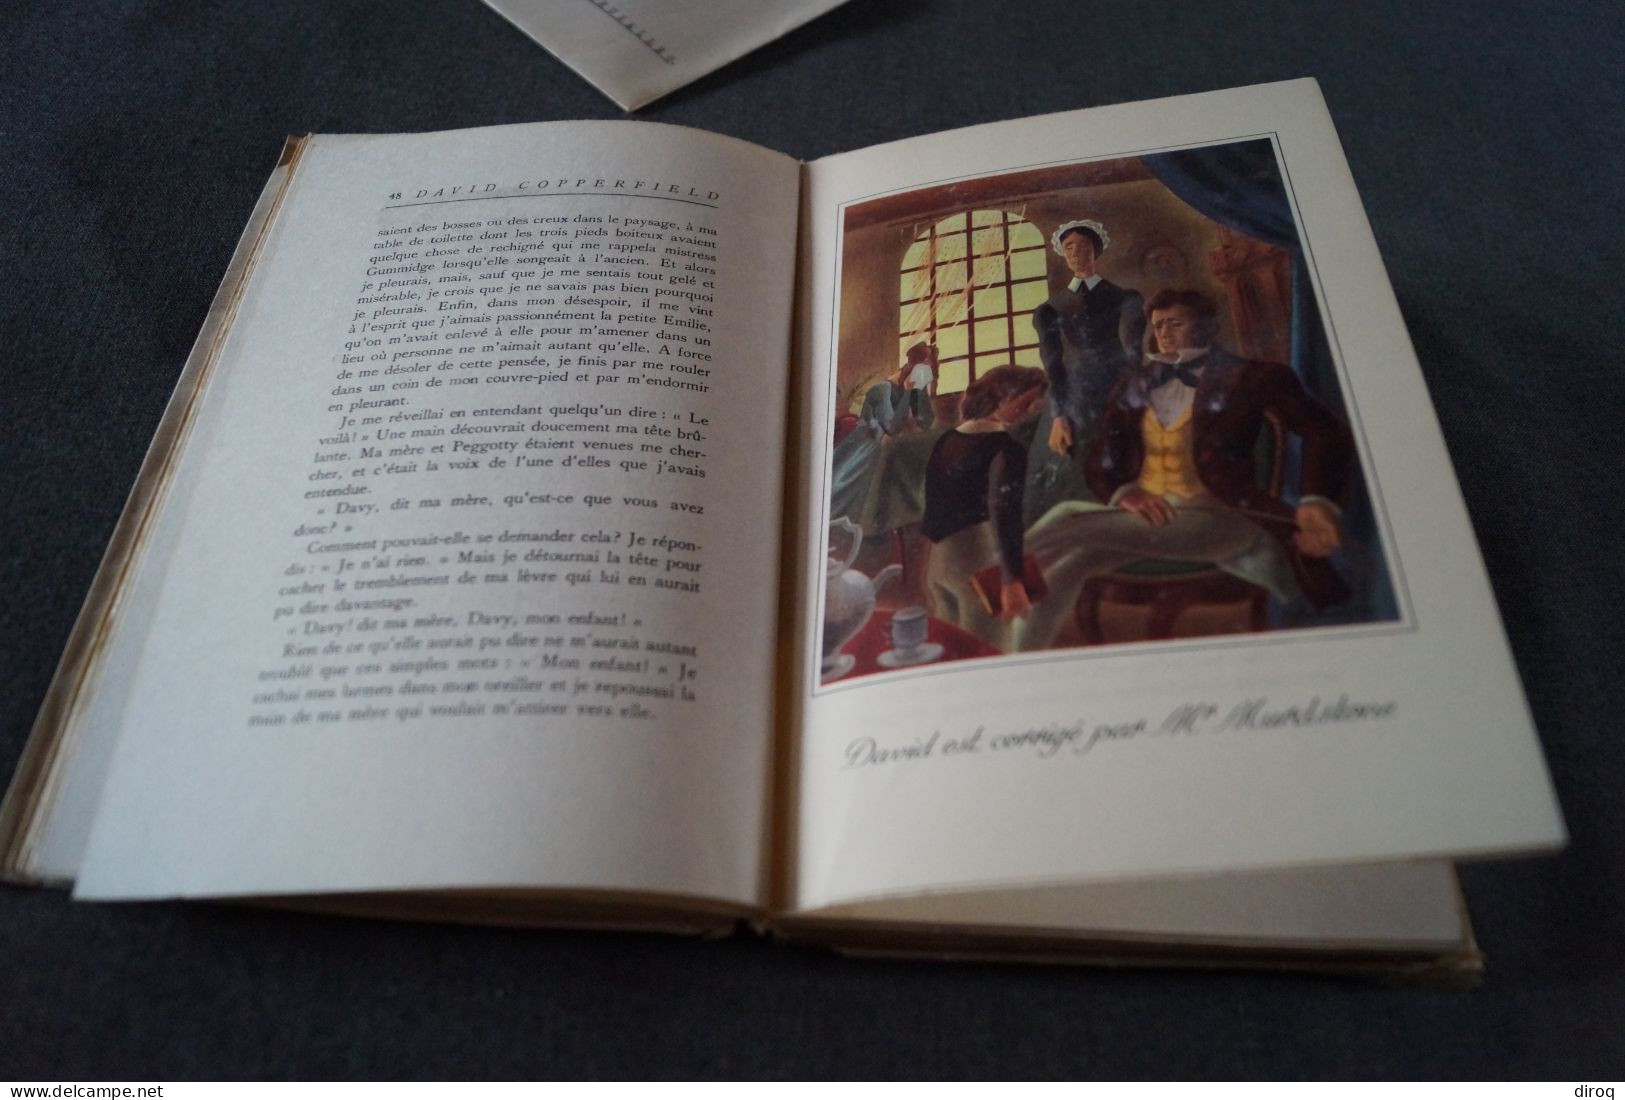 Courrier de la Reine Elisabeth + livre,David Copperfield,1949 offert par la Reine,Documents et cachet de cire,23,5/16 Cm